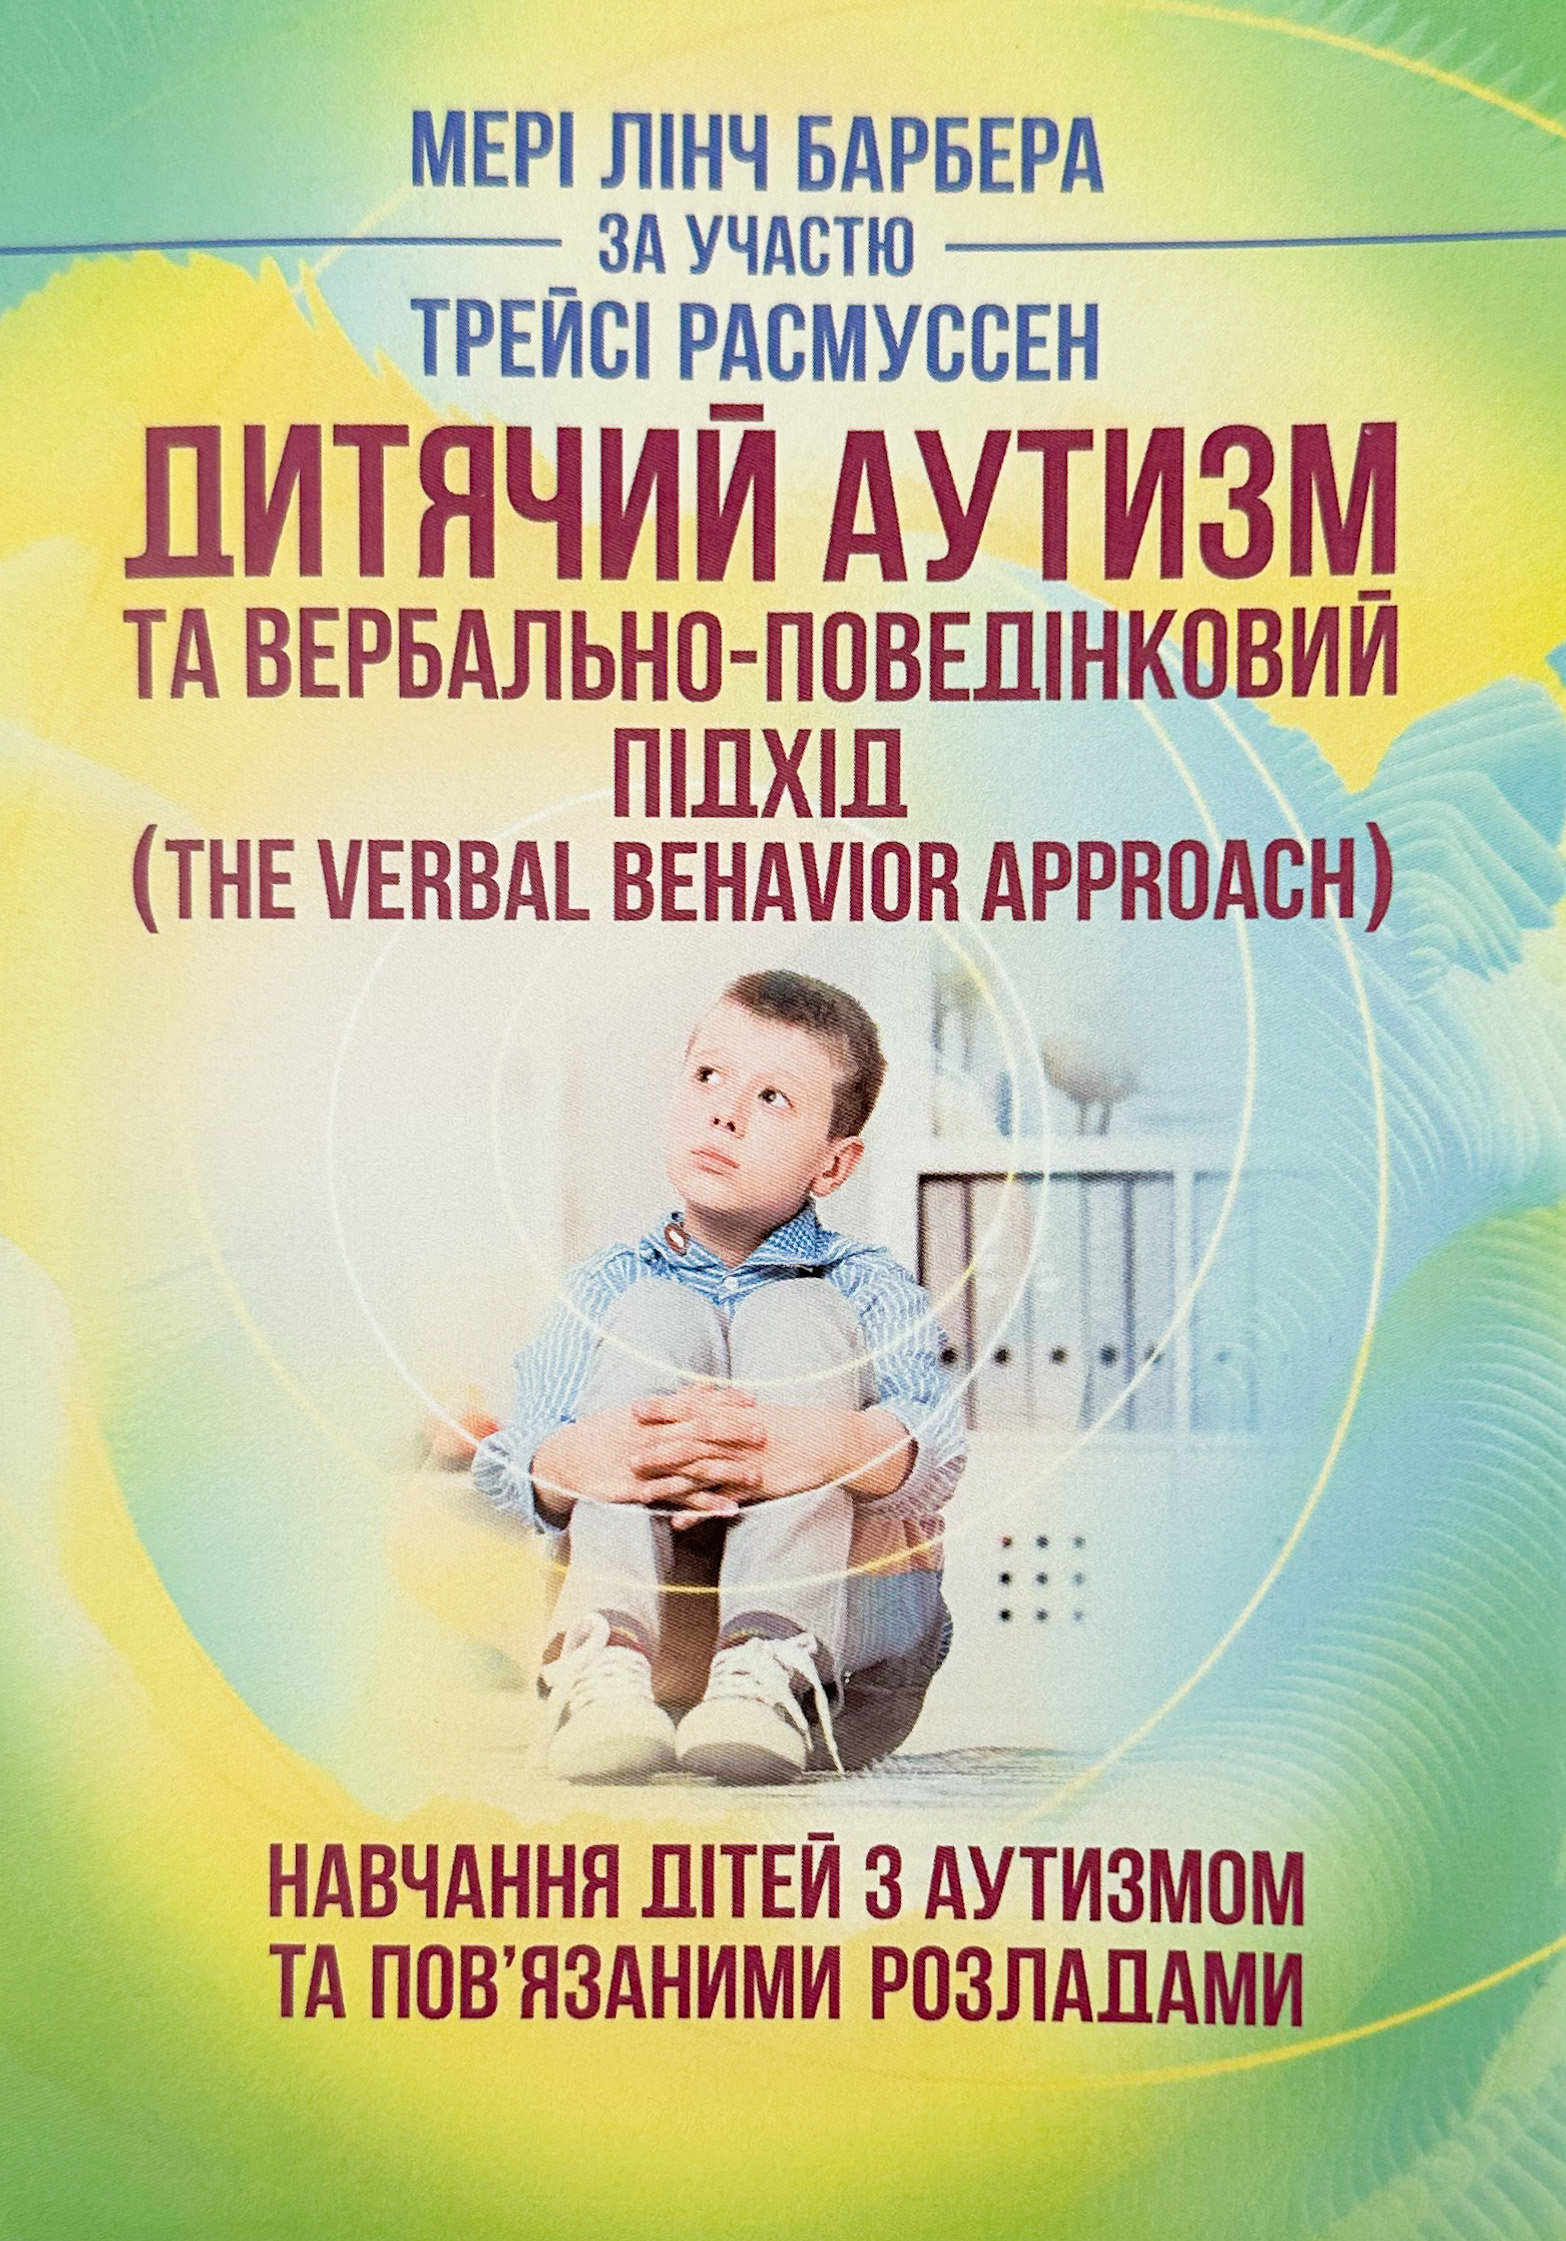 Дитячий аутизм та вербально-поведінковий підхід. Автор — Мері Линч Барбера. 